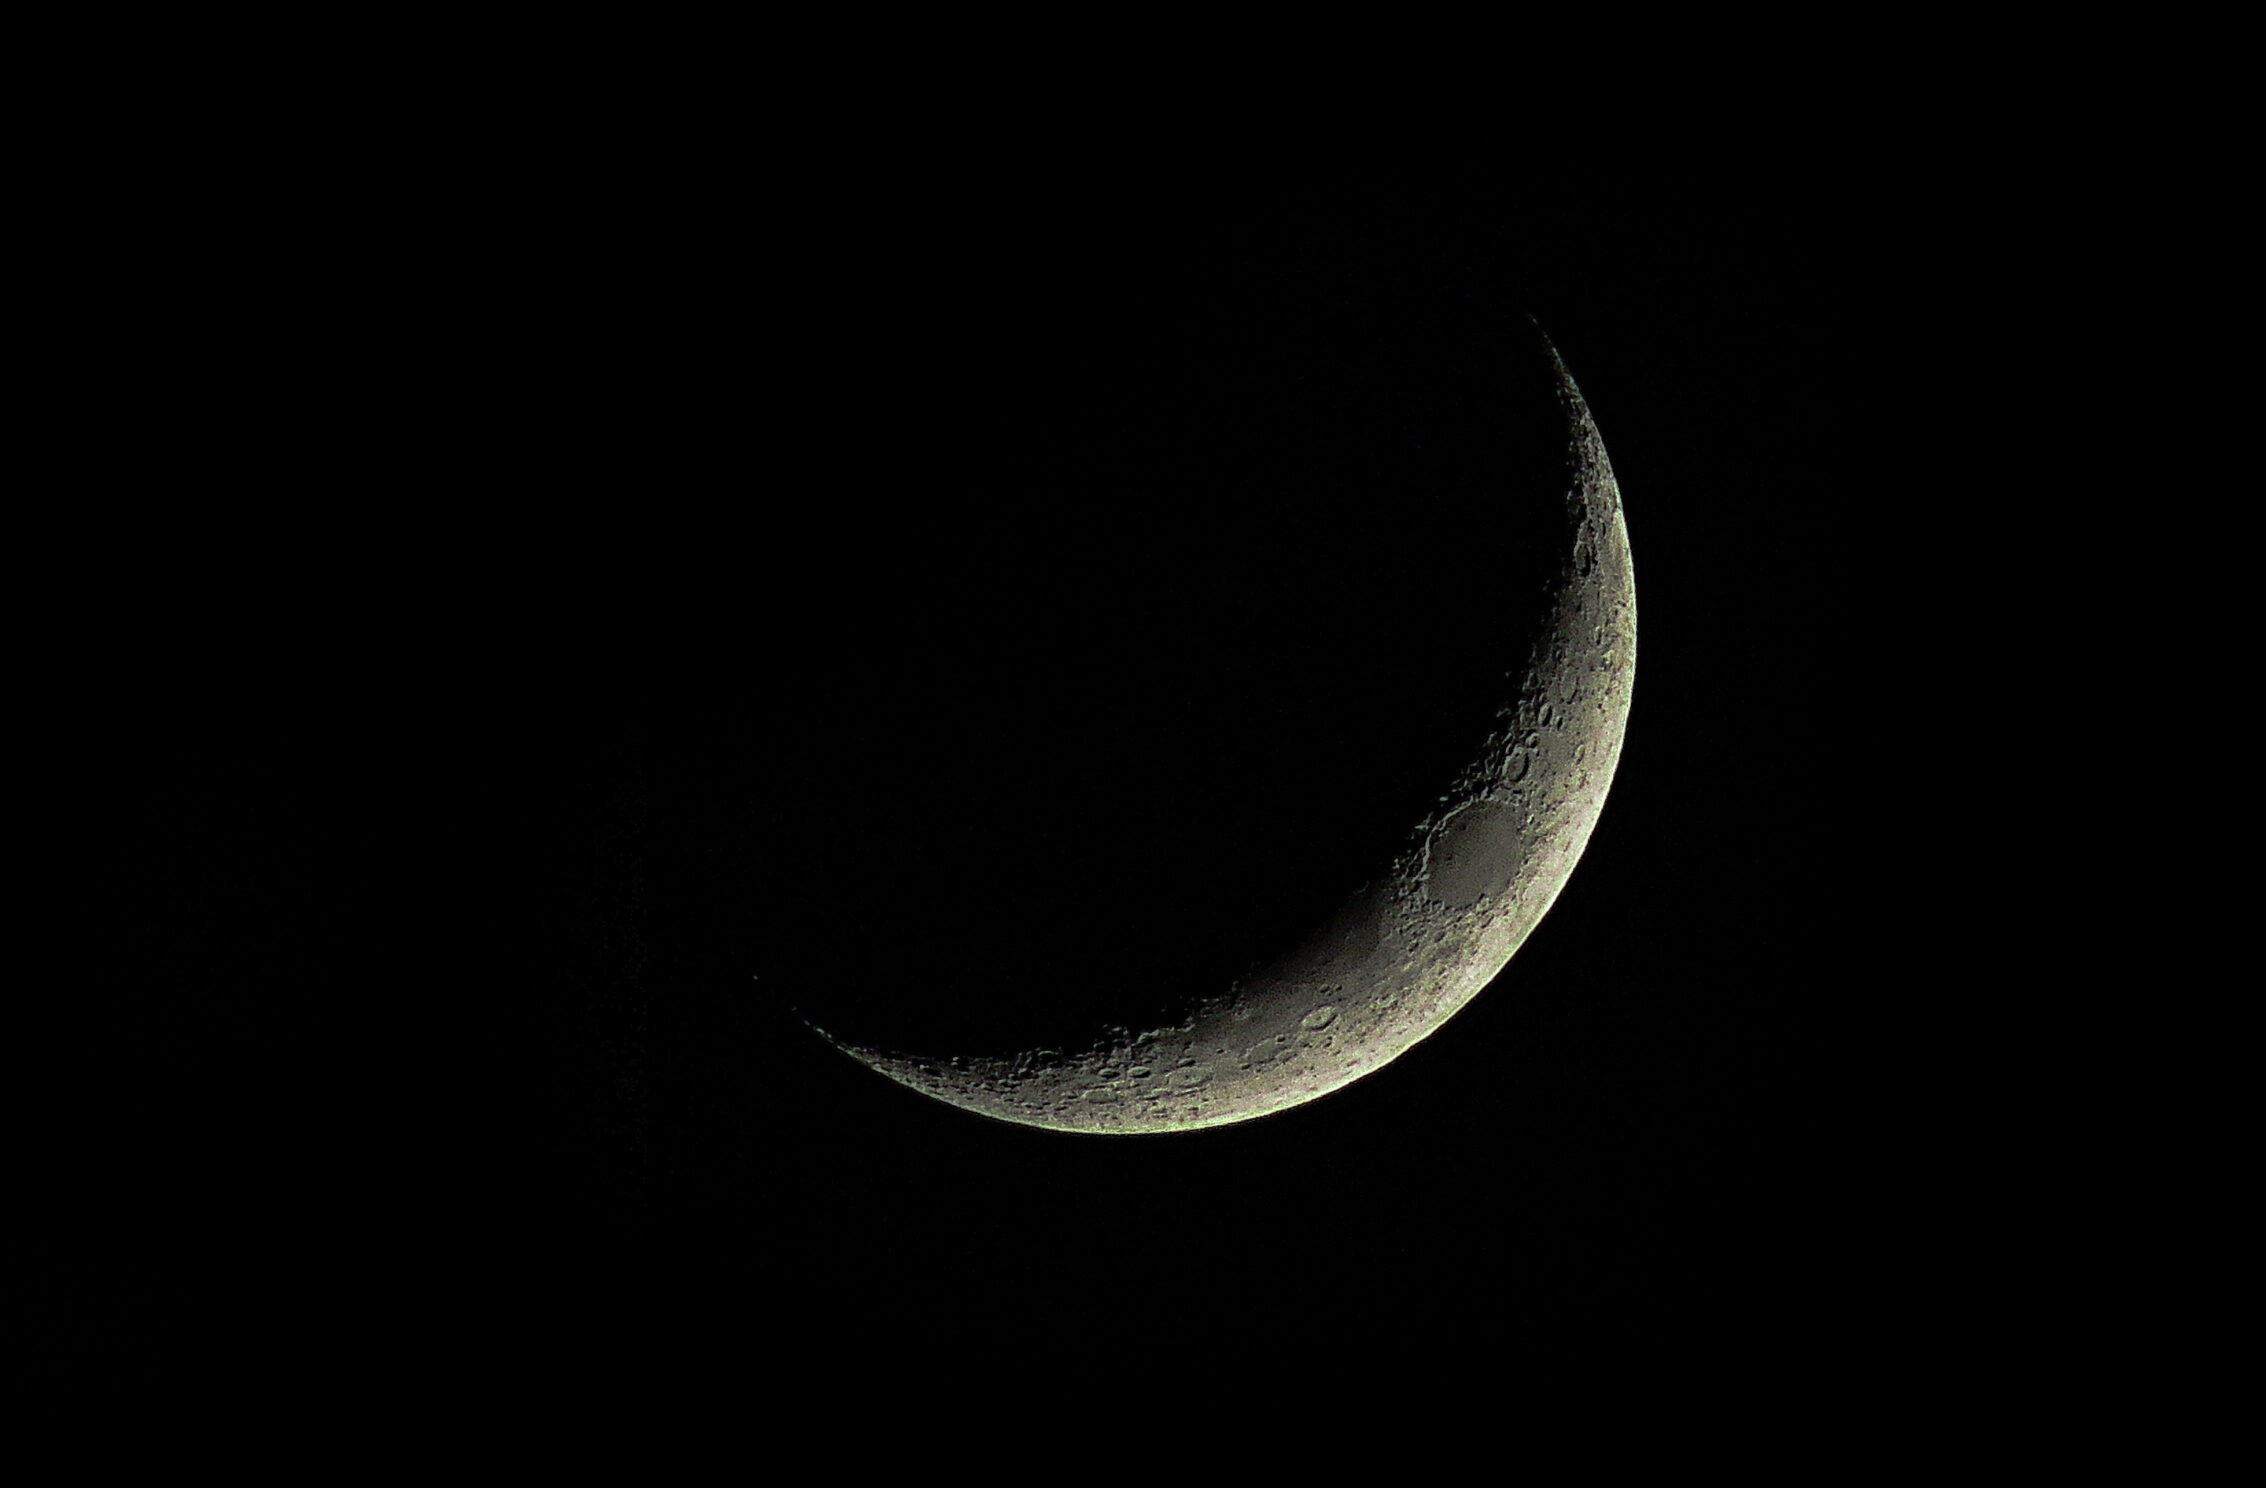 2266x1488 wallpaper Dark Moon Crescent Luna Space iPad Wallpaper 2266x1488 pixels resolution